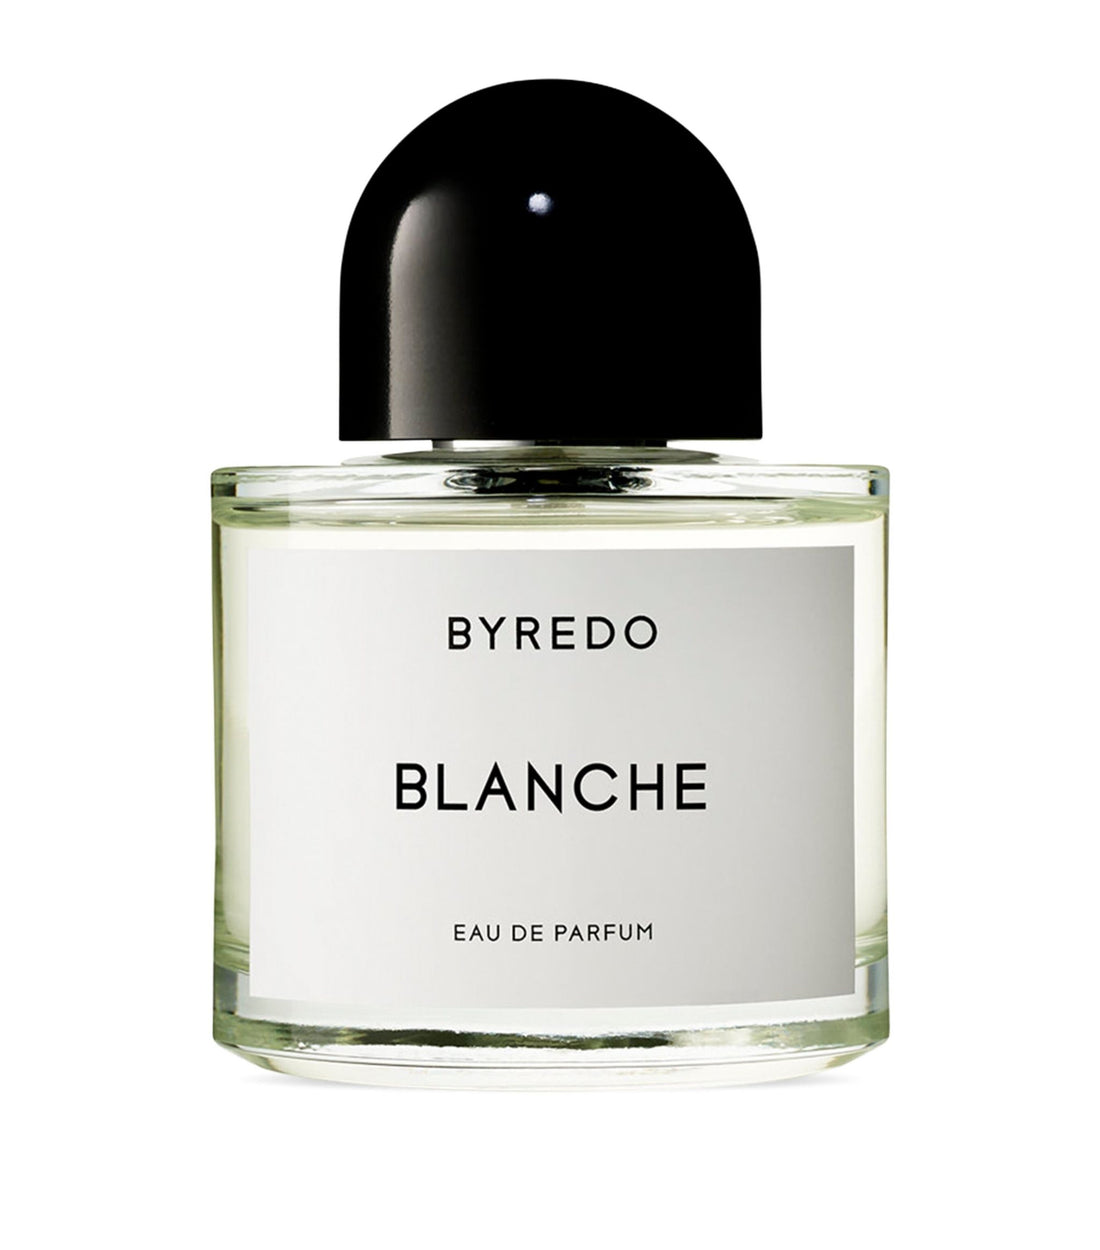 BYREDO Blanche Eau de Parfum Samples